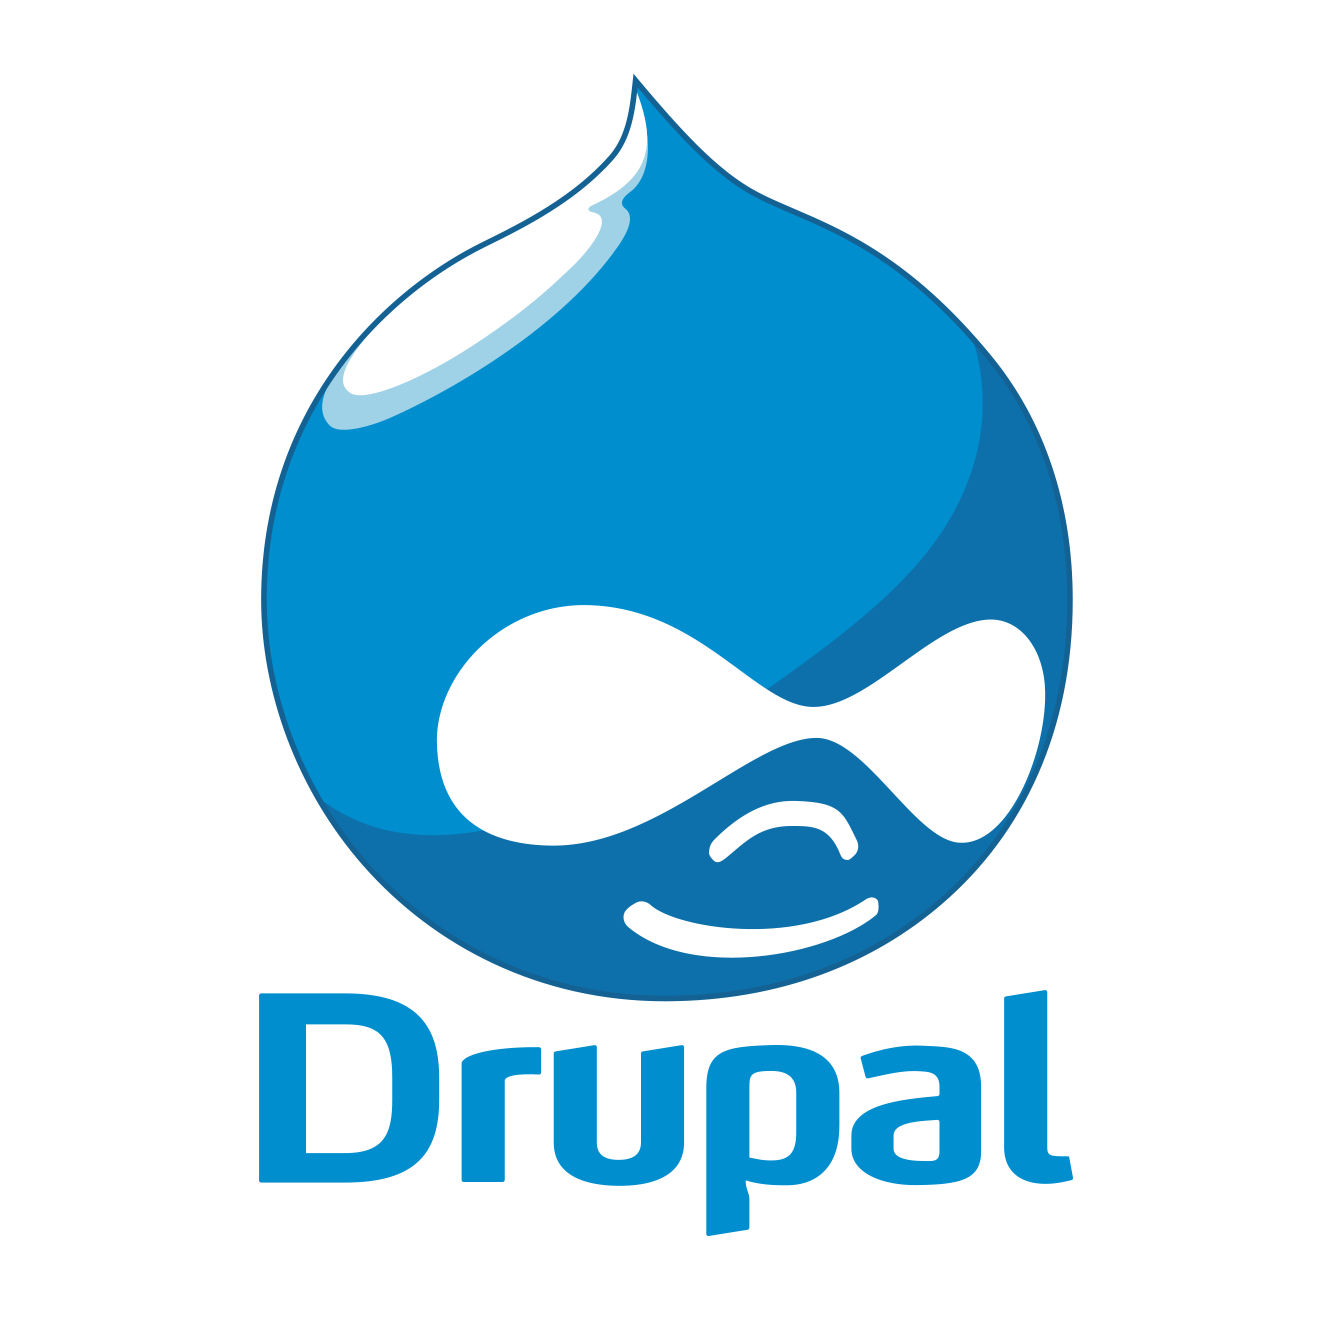 drupal web development consultant